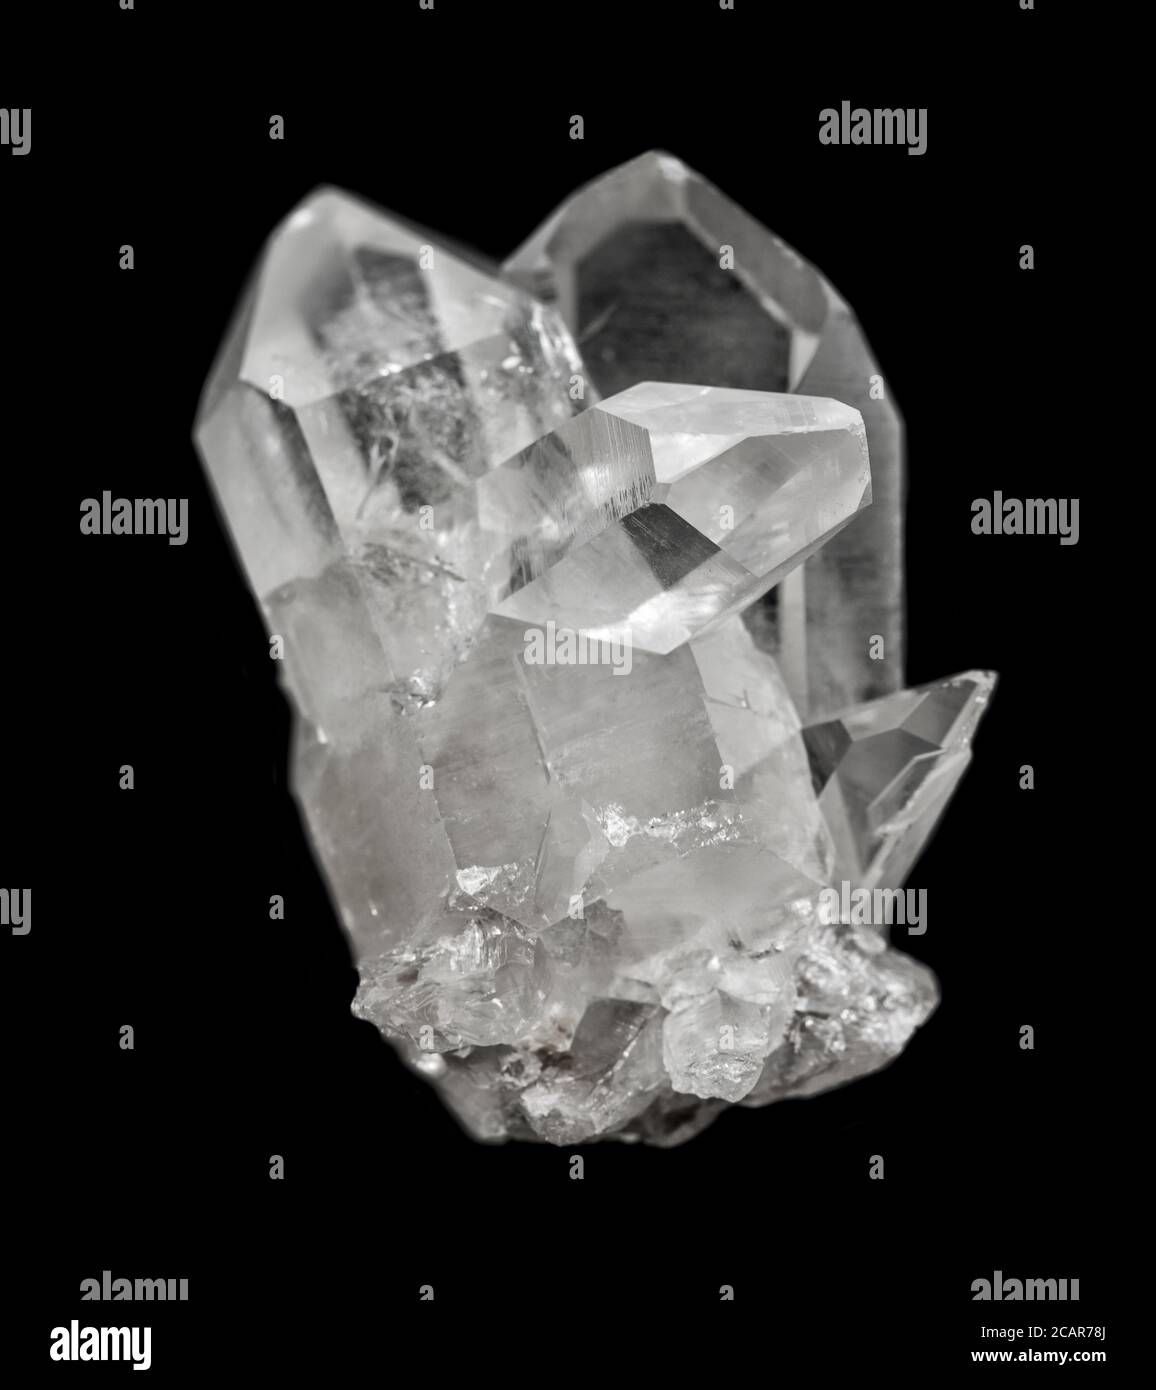 Gruppo di diversi cristalli di roccia trasparenti da vicino, isolati su uno sfondo nero Foto Stock